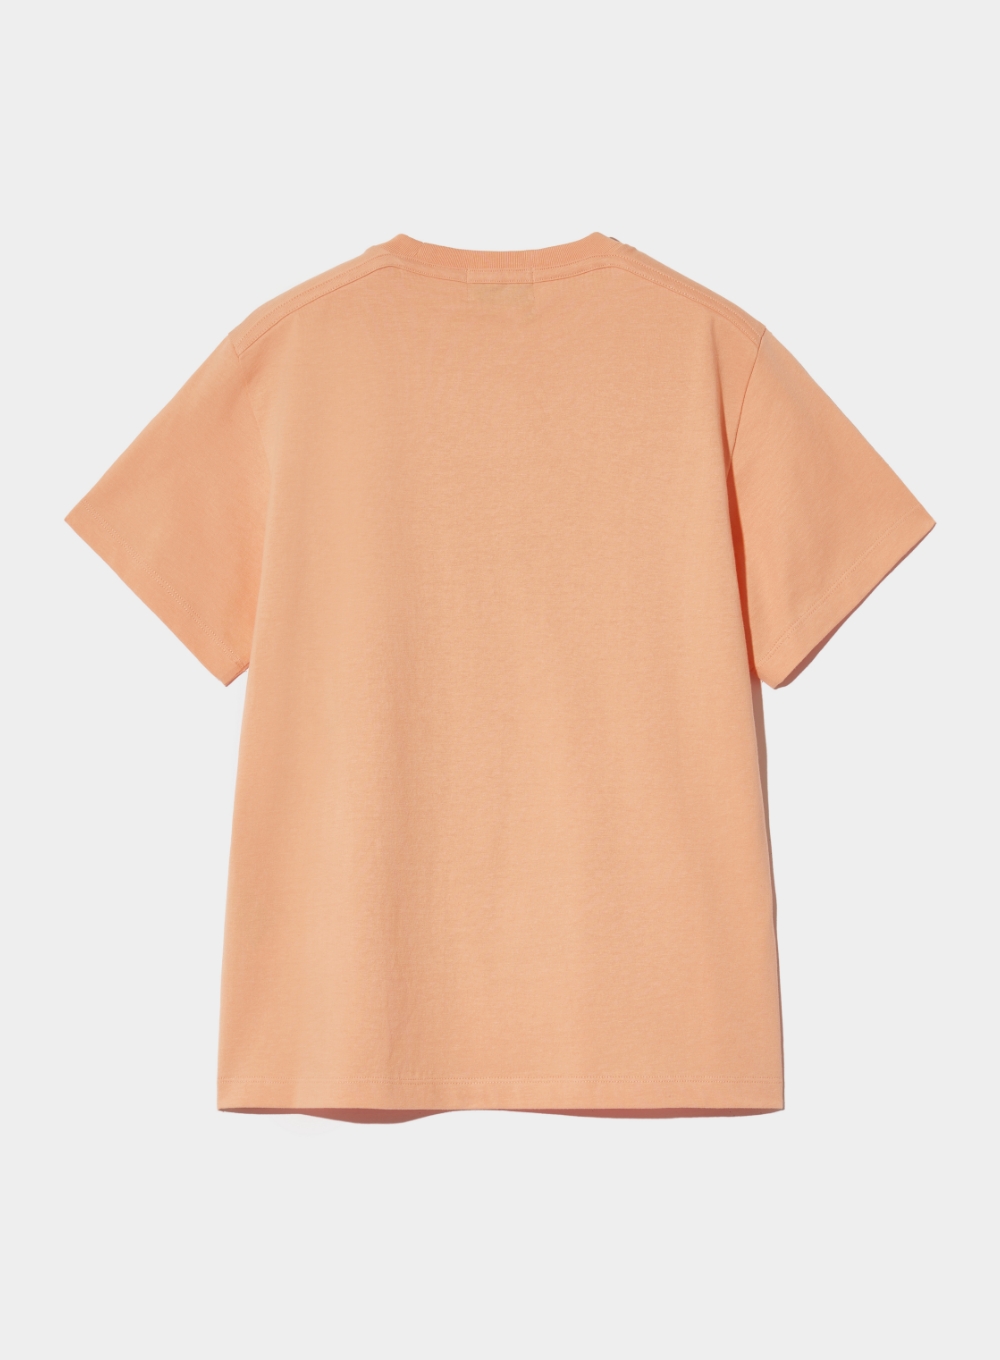 [5,000원 쿠폰] (W) Banana Tree Graphic T-Shirt - Peach Coral